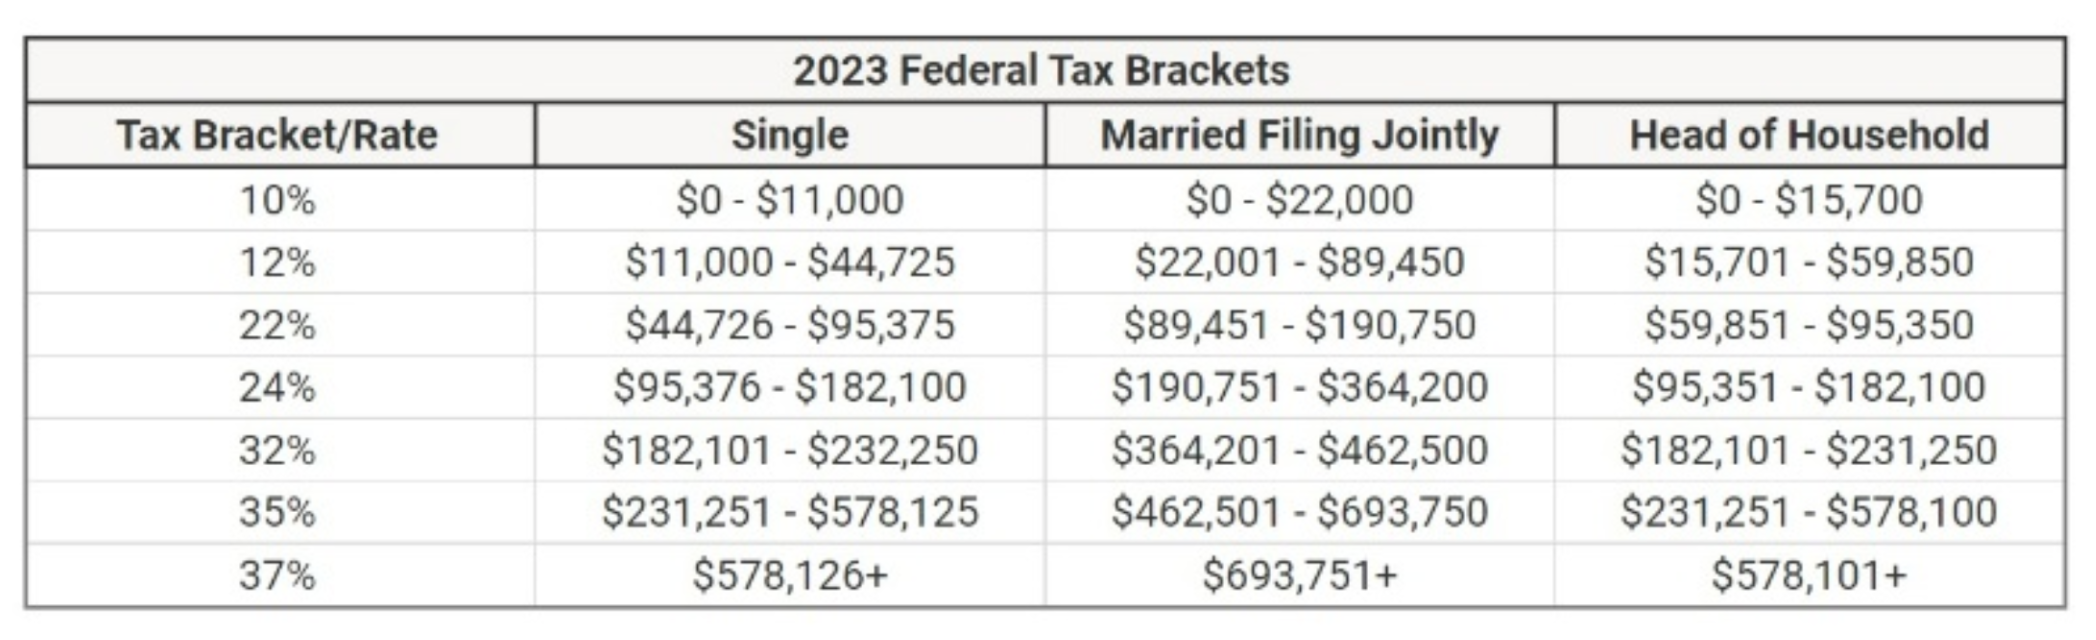 2023 Federal Tax Bracket